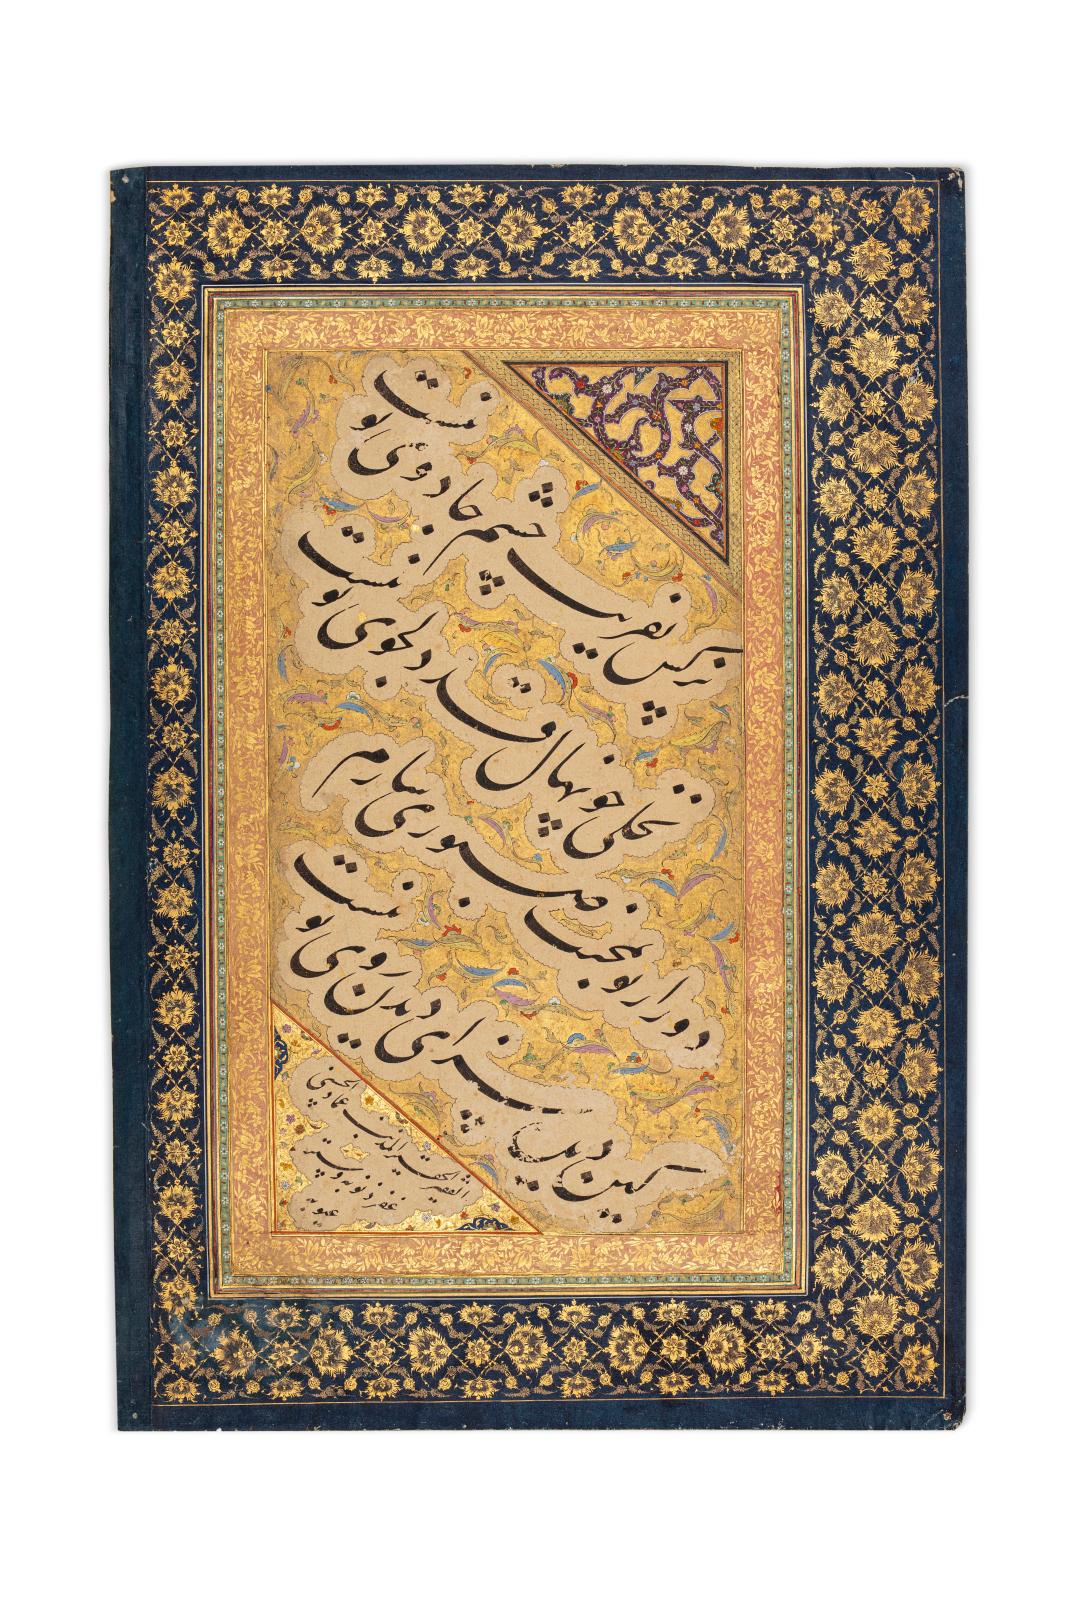 Sur l’avers, le quatrain réalisé par Emad al-Hassani, le plus célèbre calligraphe persan du XVIe-XVIIe siècle. 